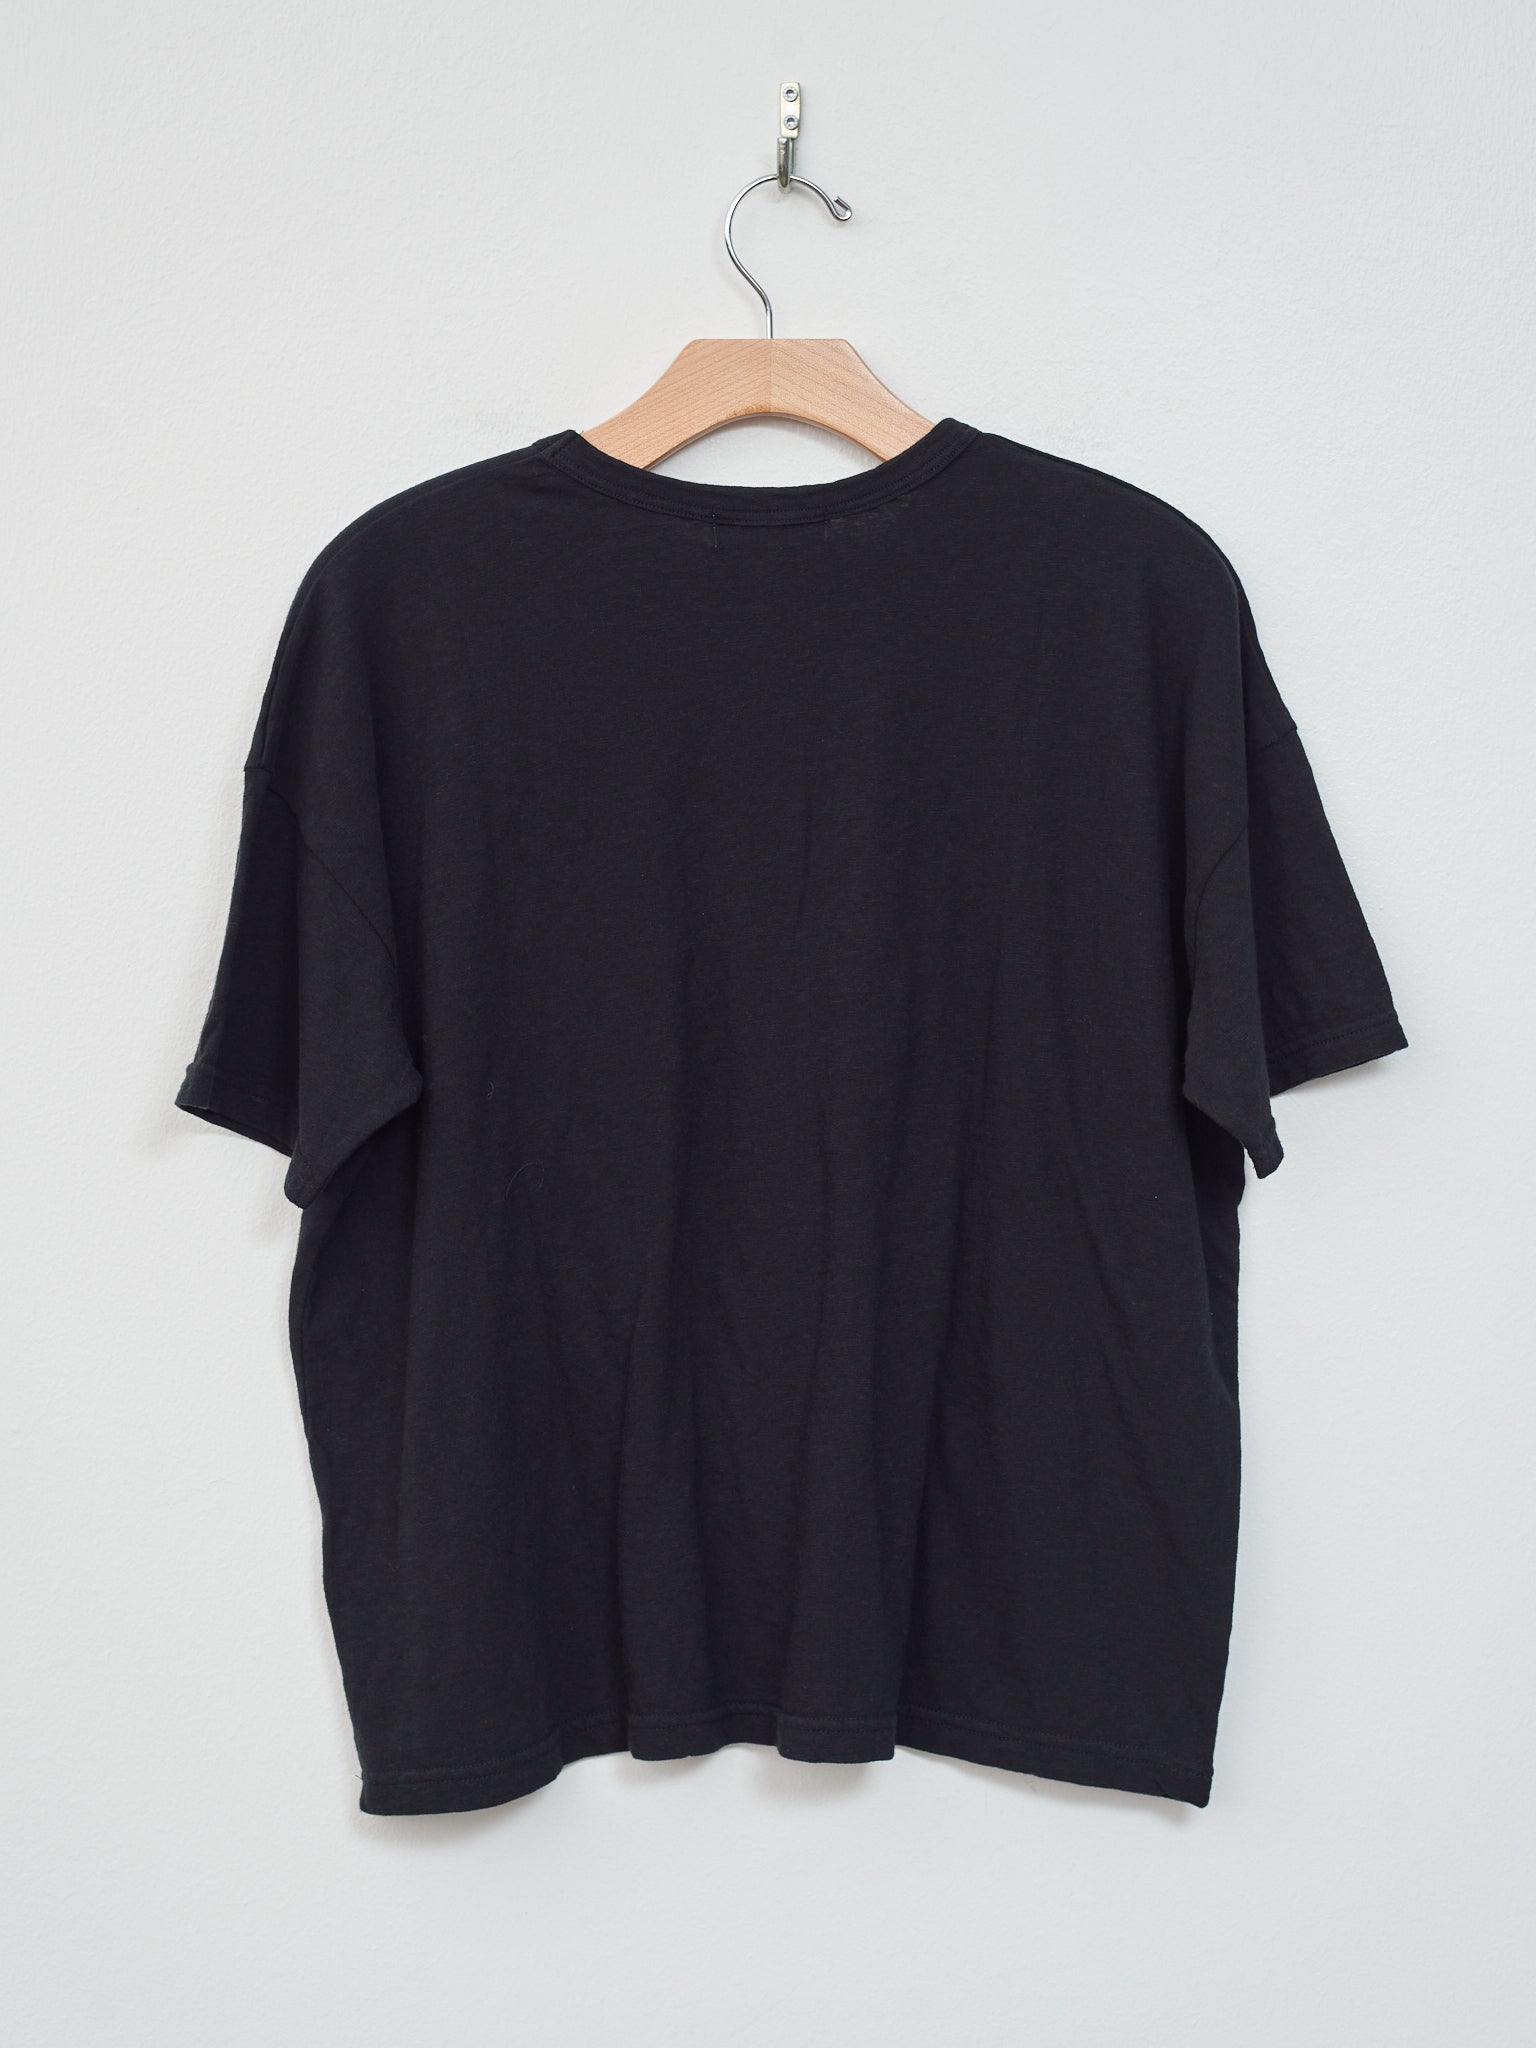 Namu Shop - Ichi T-Shirt - Black